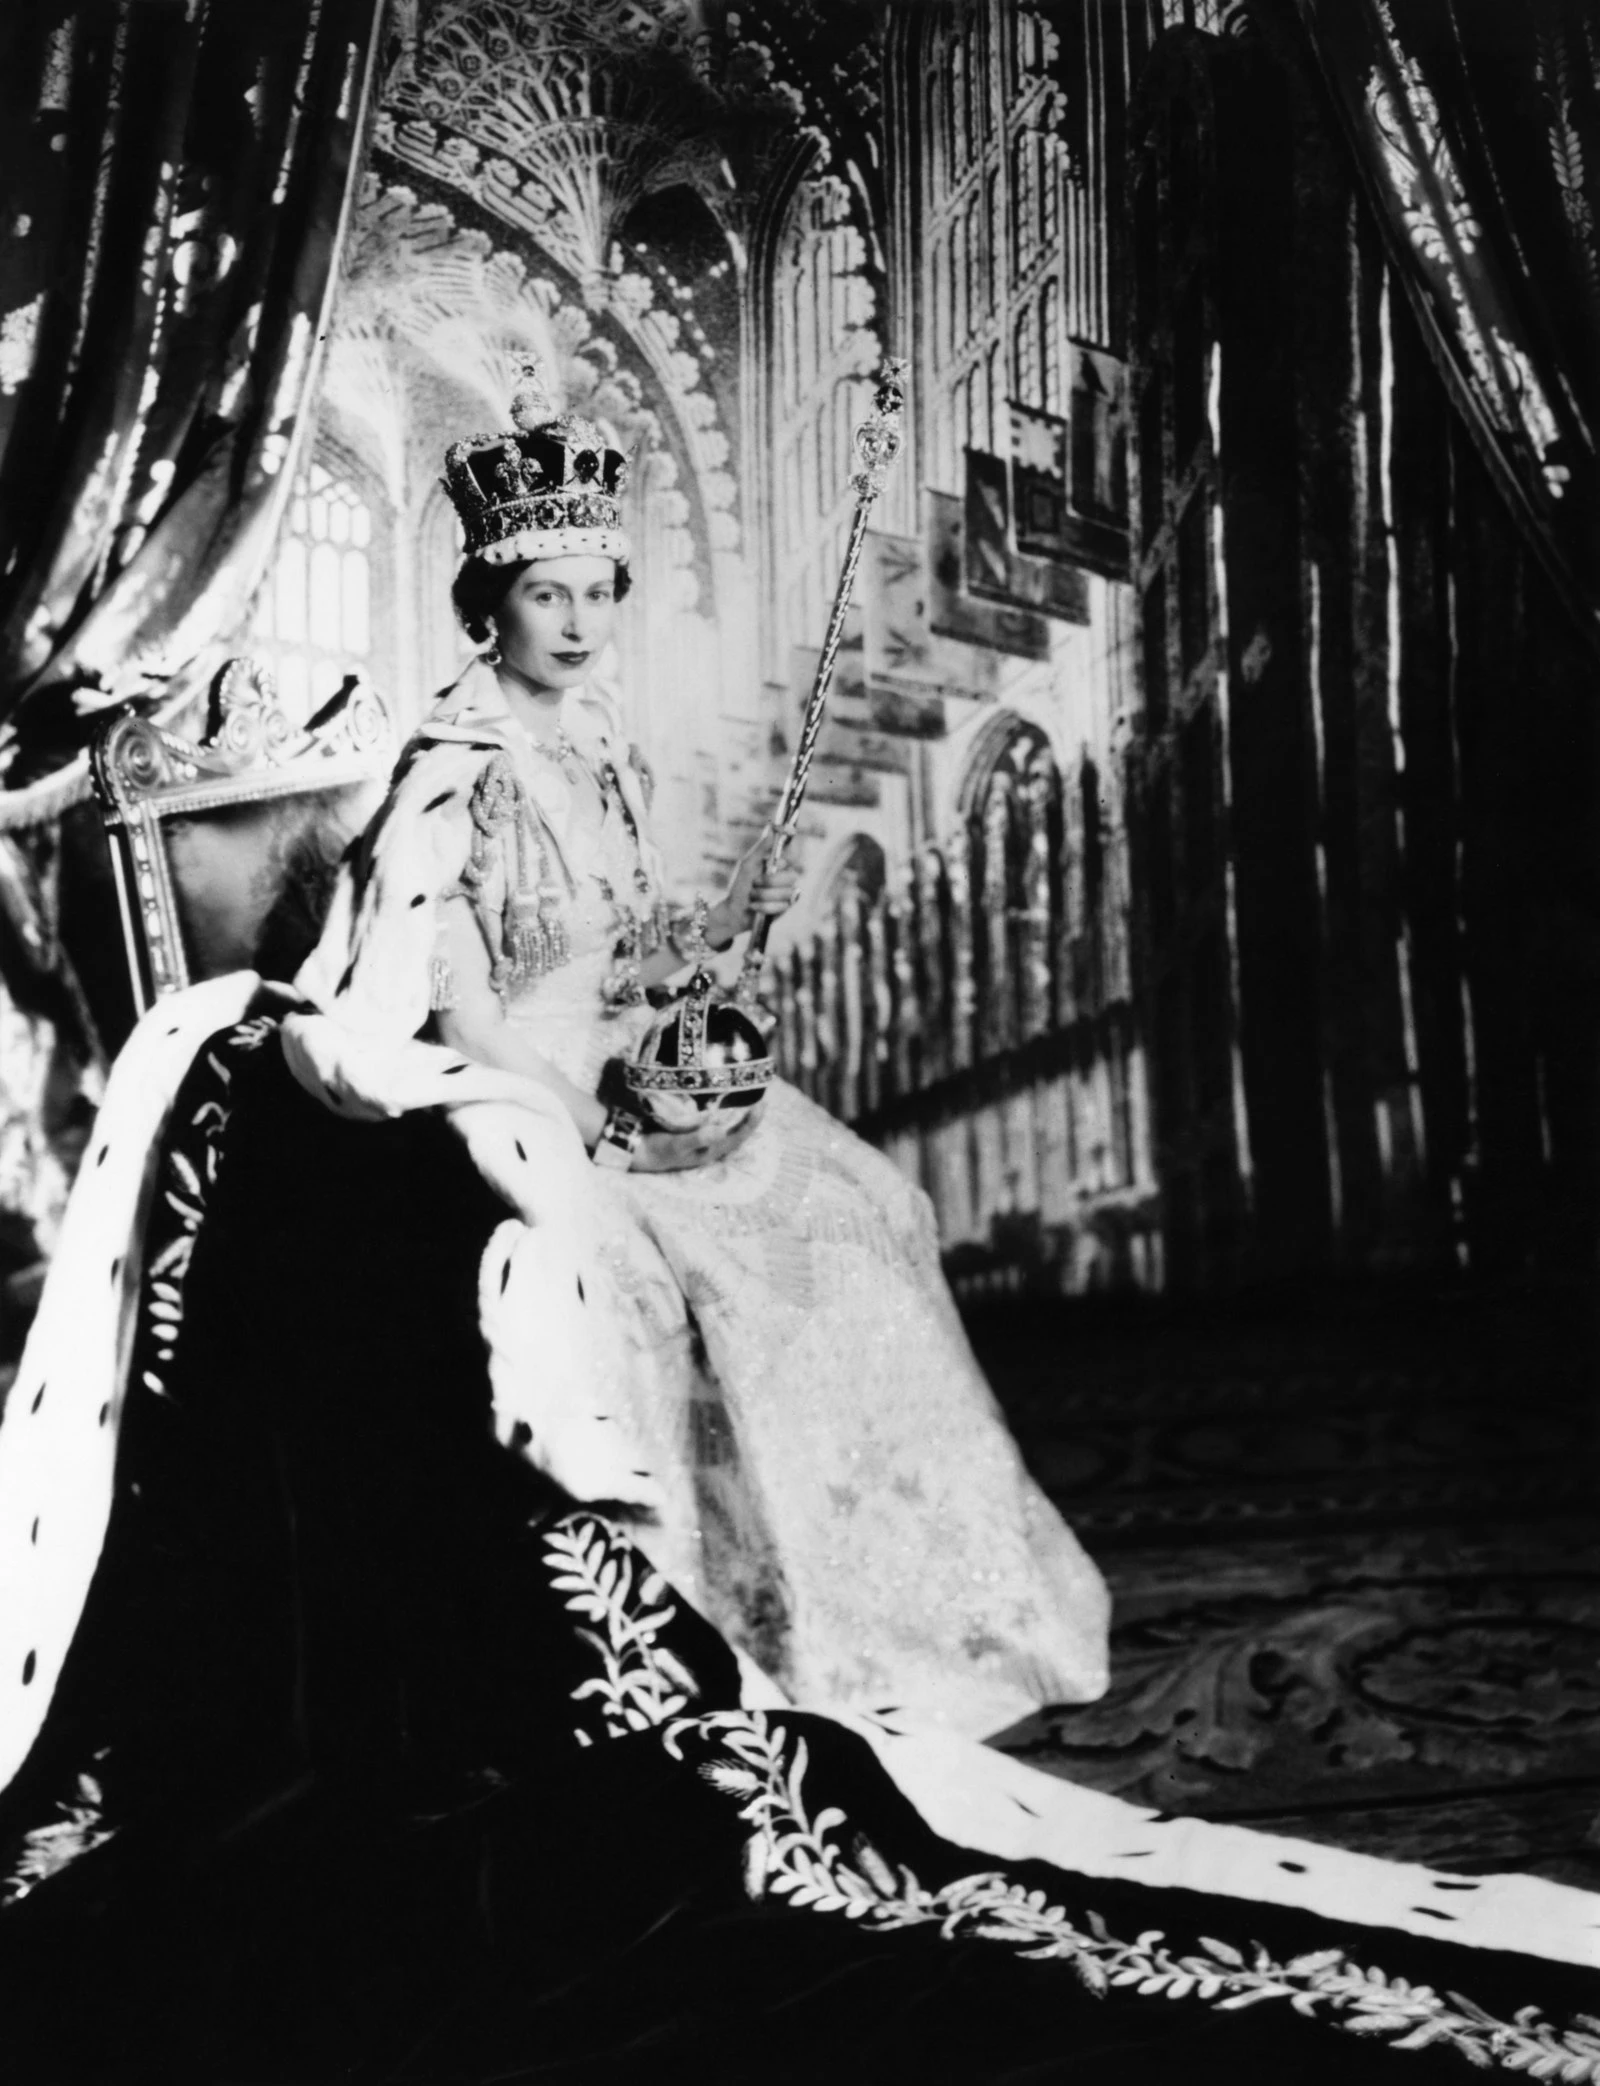 Офіційний коронаційний портрет королеви Єлизавети II від Сесіла Бітона, опублікований у британському Vogue у 1953 році